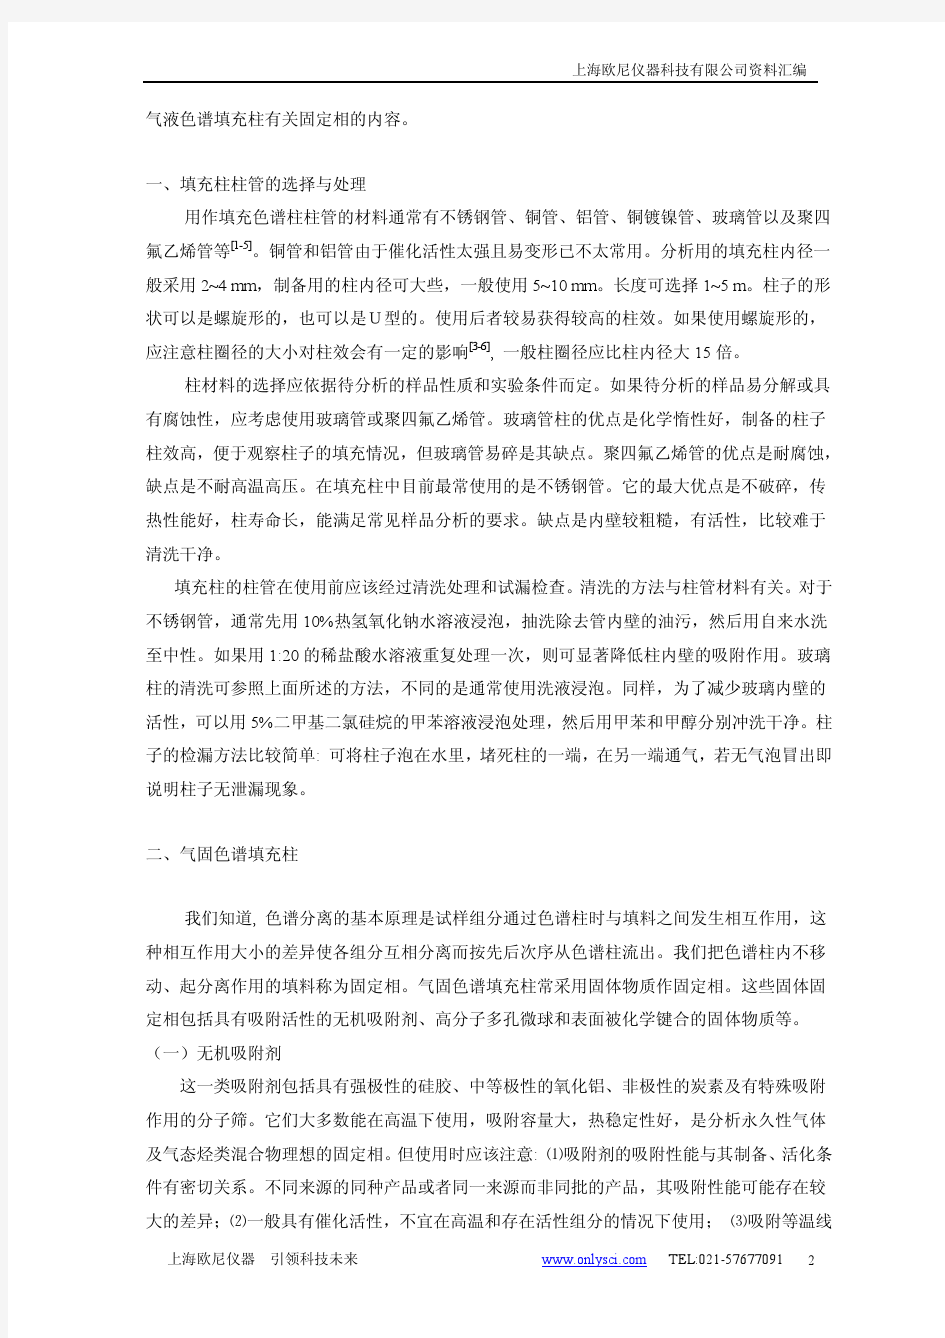 上海欧尼仪器科技有限公司气相色谱柱知识